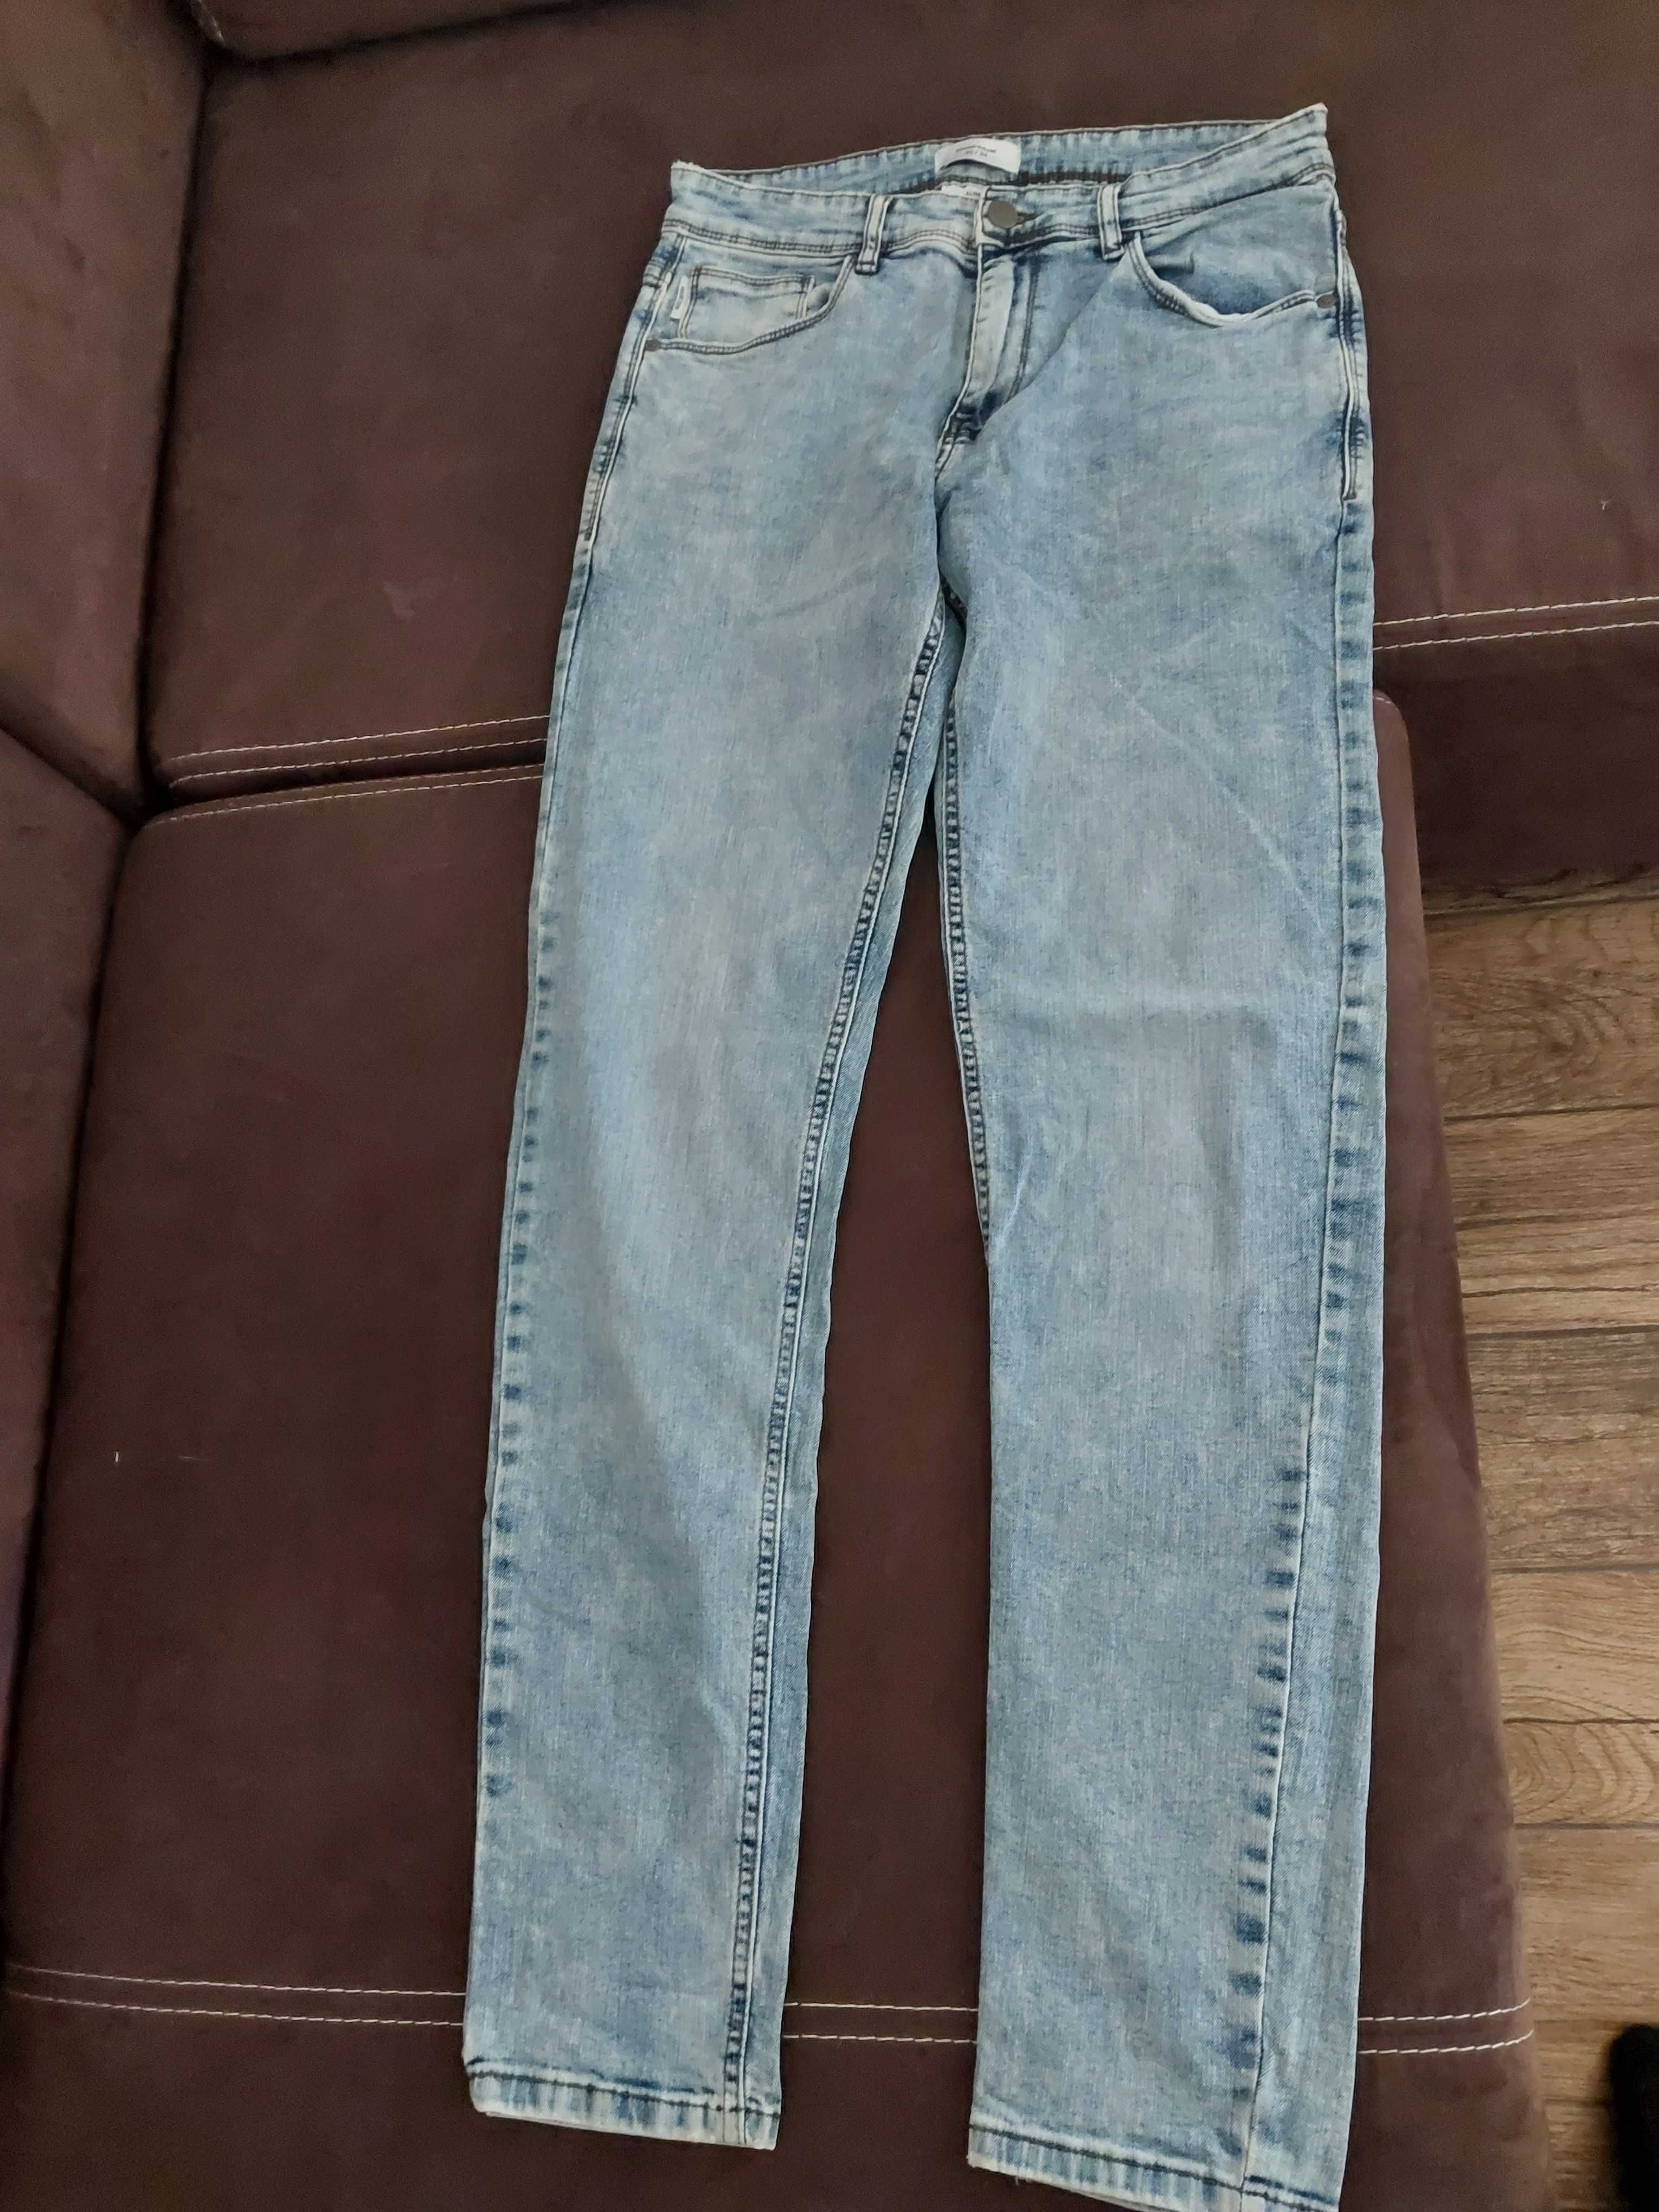 Spodnie jasny jeans slim 30/34  house